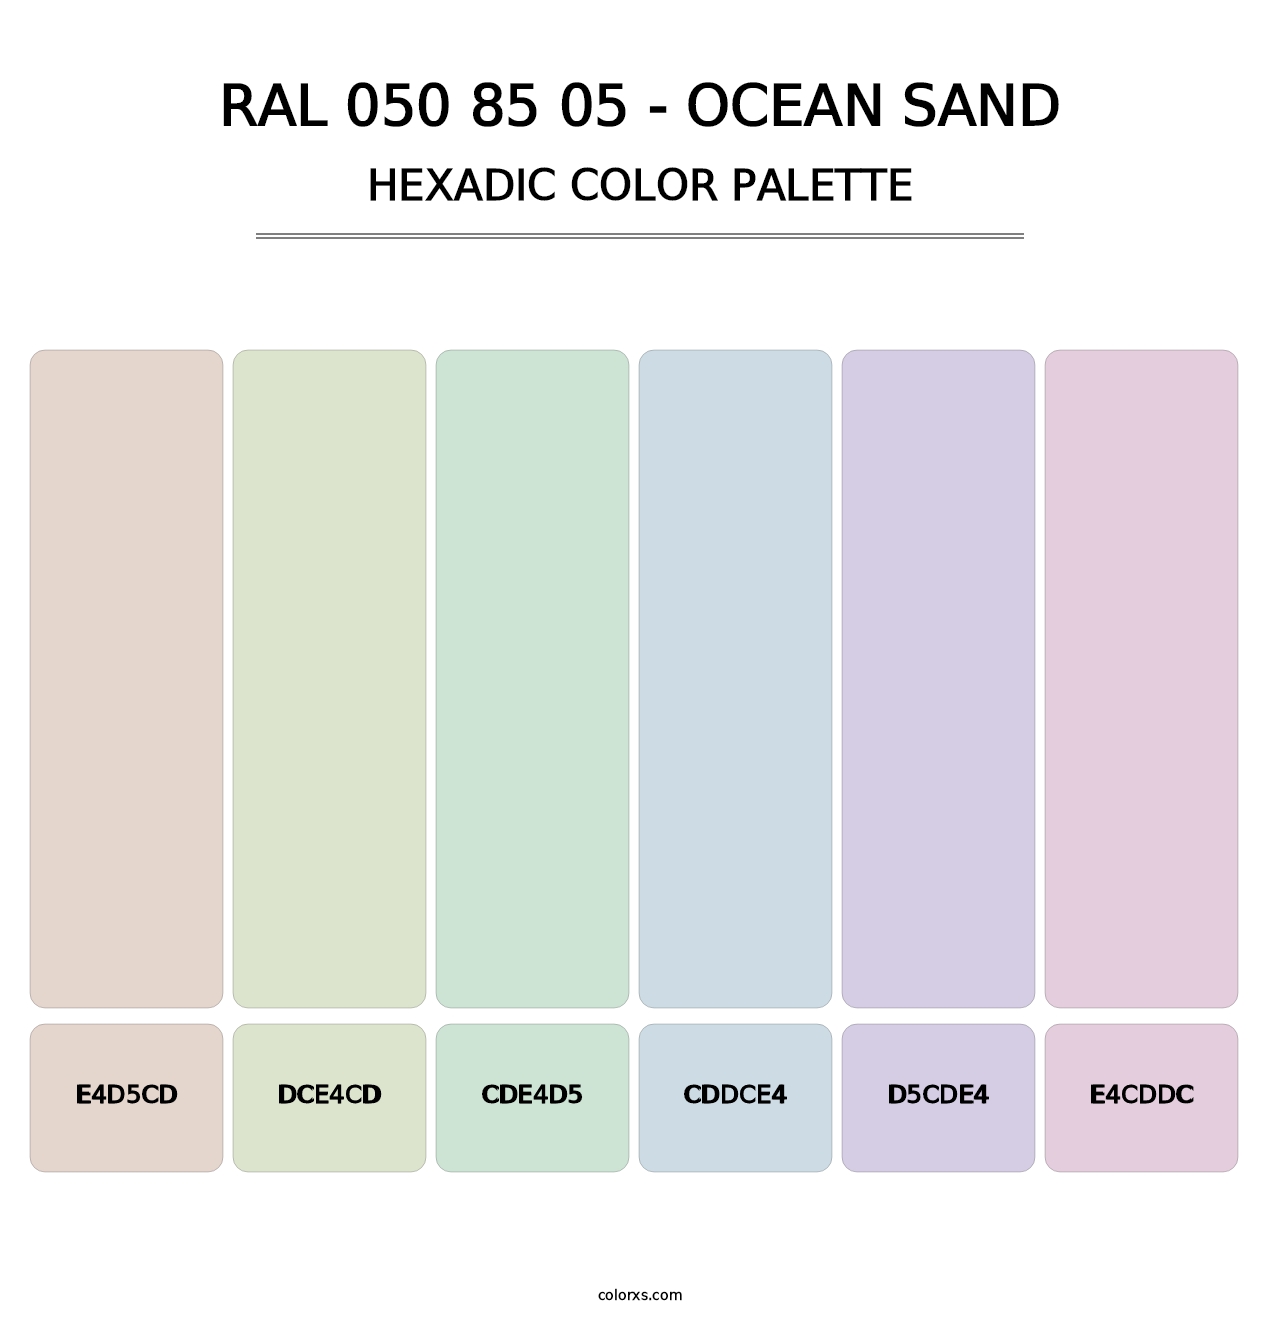 RAL 050 85 05 - Ocean Sand - Hexadic Color Palette